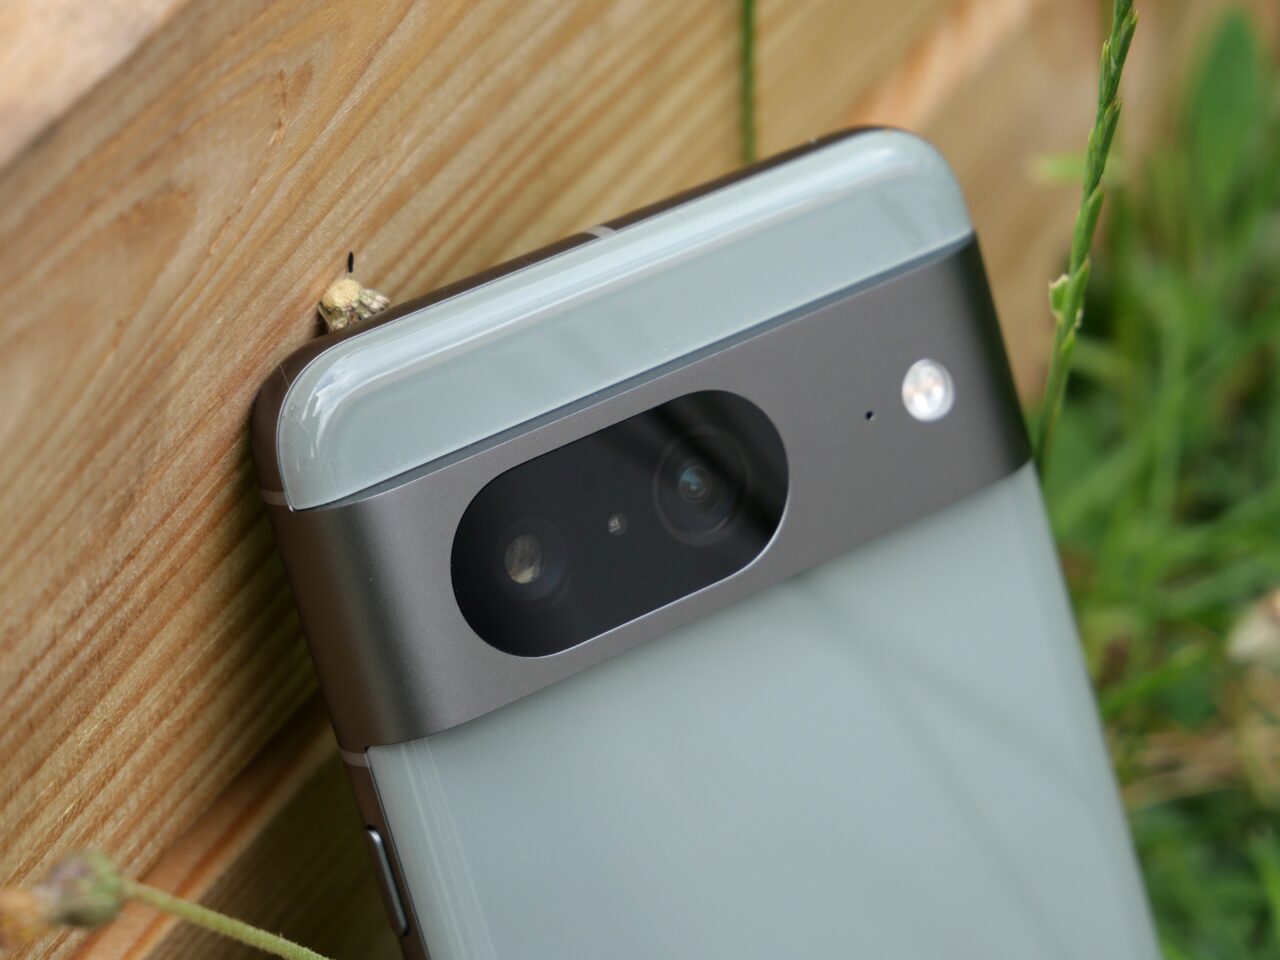 Telefon komórkowy z aparatem leżący na drewnianej powierzchni obok trawy.